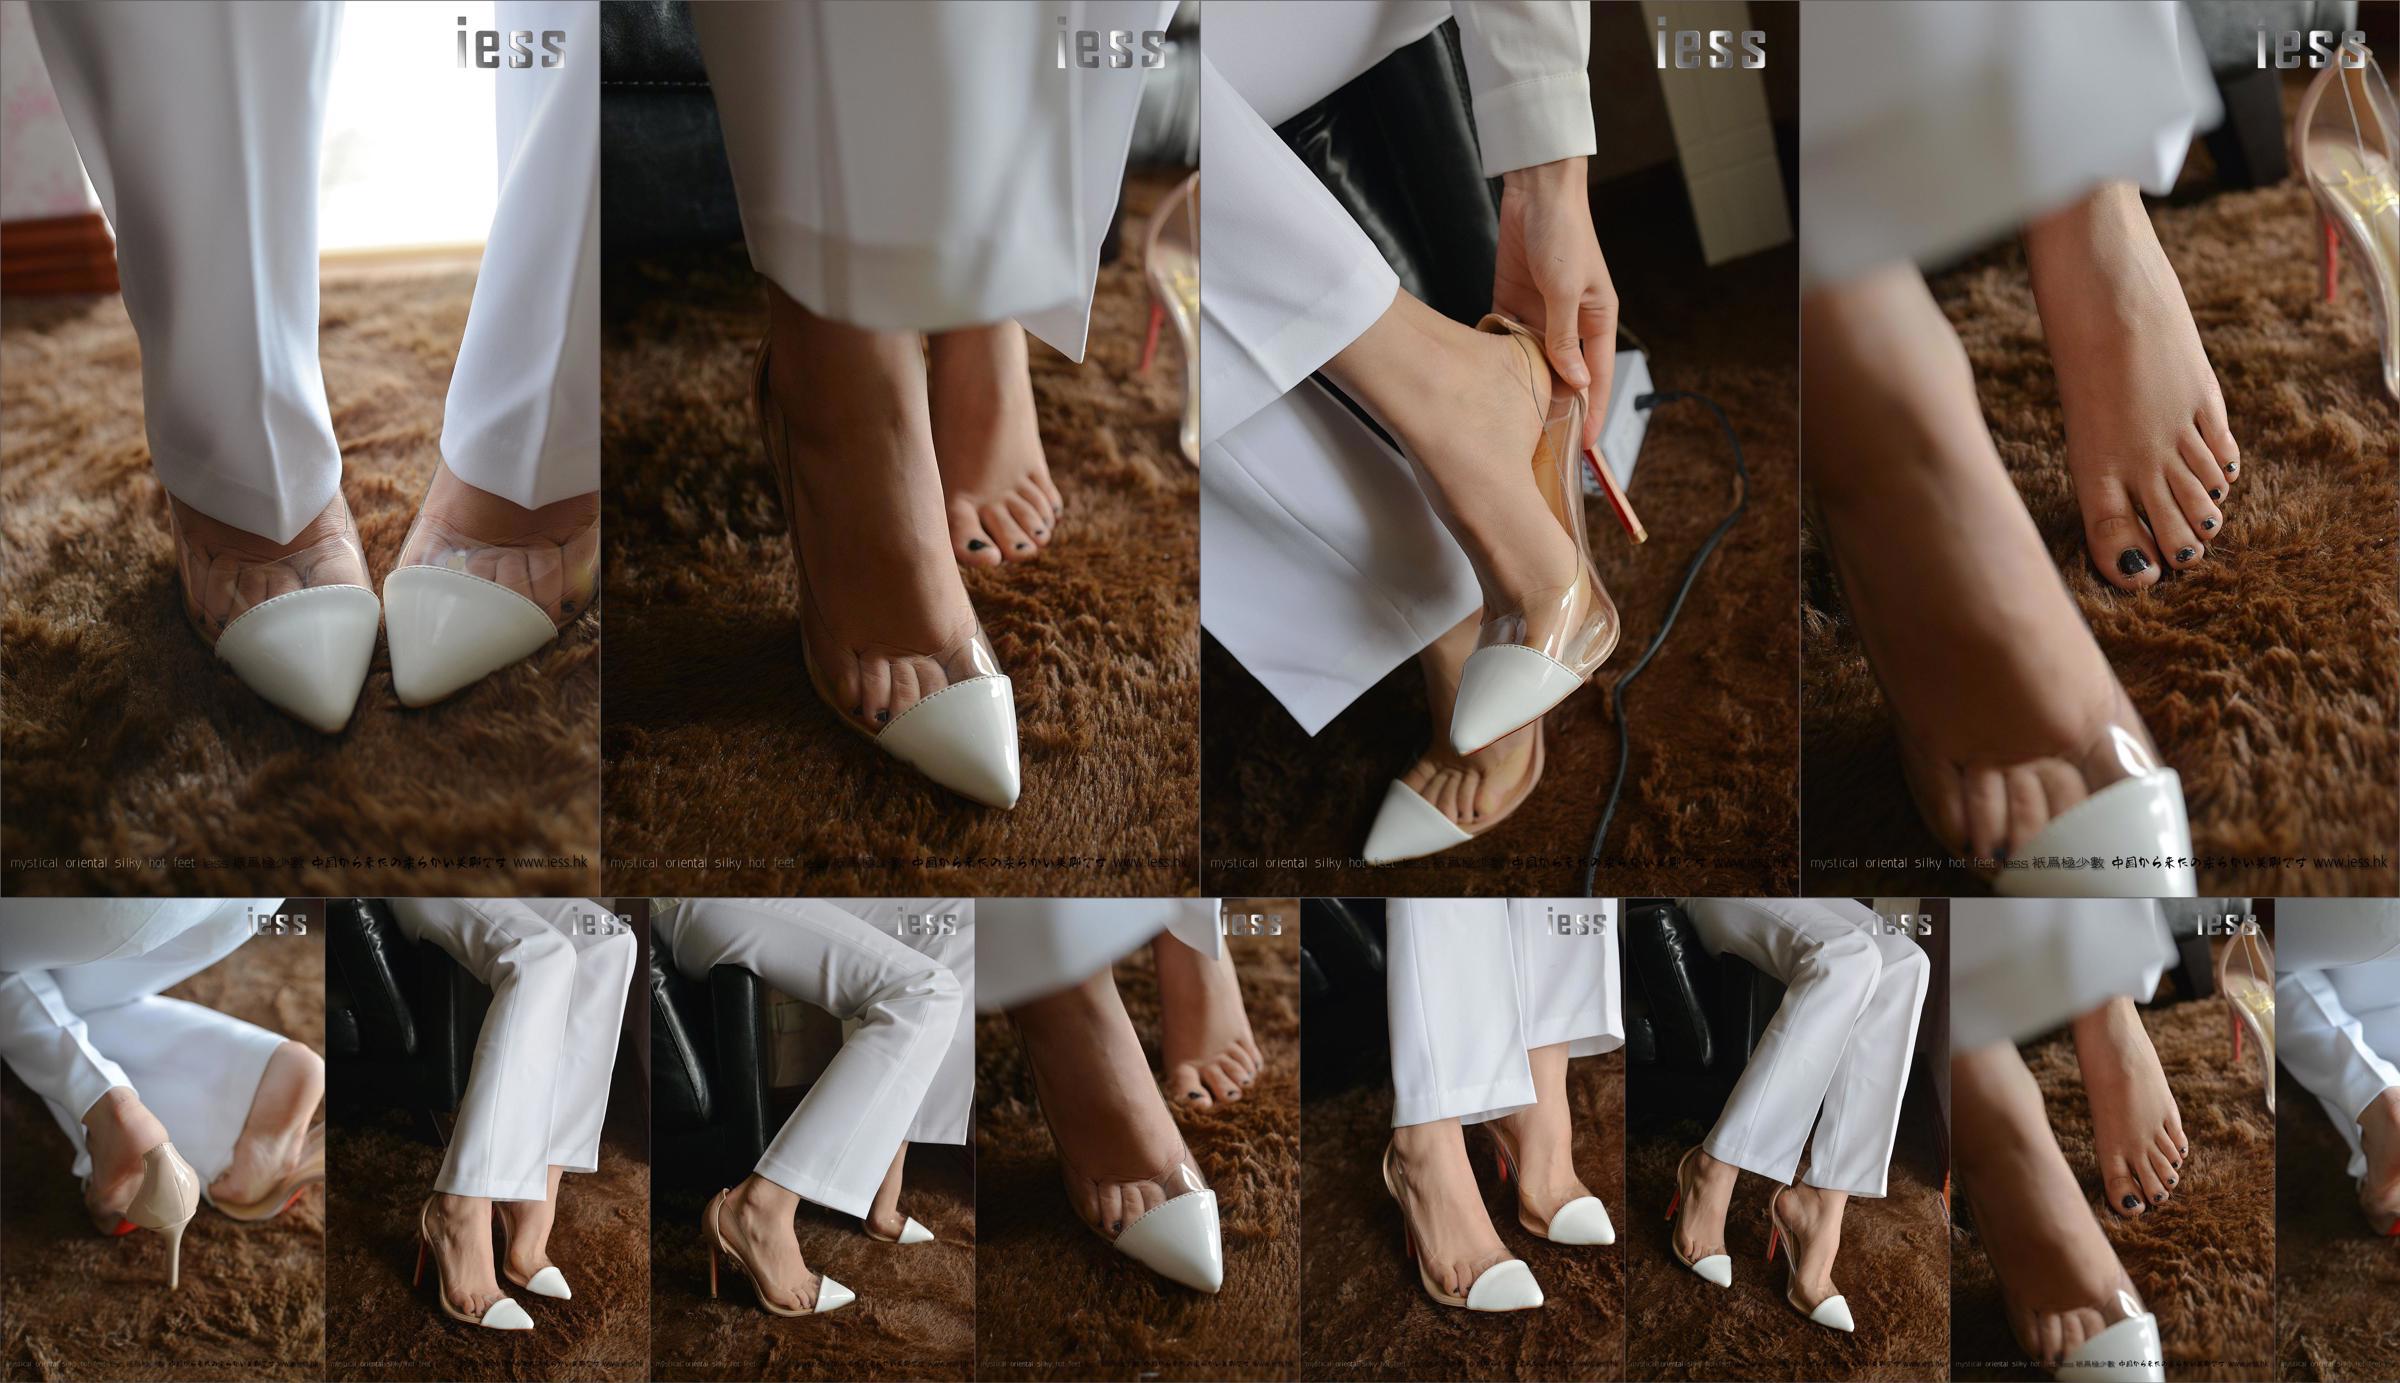 Silky Foot Bento 058 Suspense "Коллекция - высокие каблуки босиком" [IESS Wei Si Fun Xiang] No.d29ff4 Страница 4